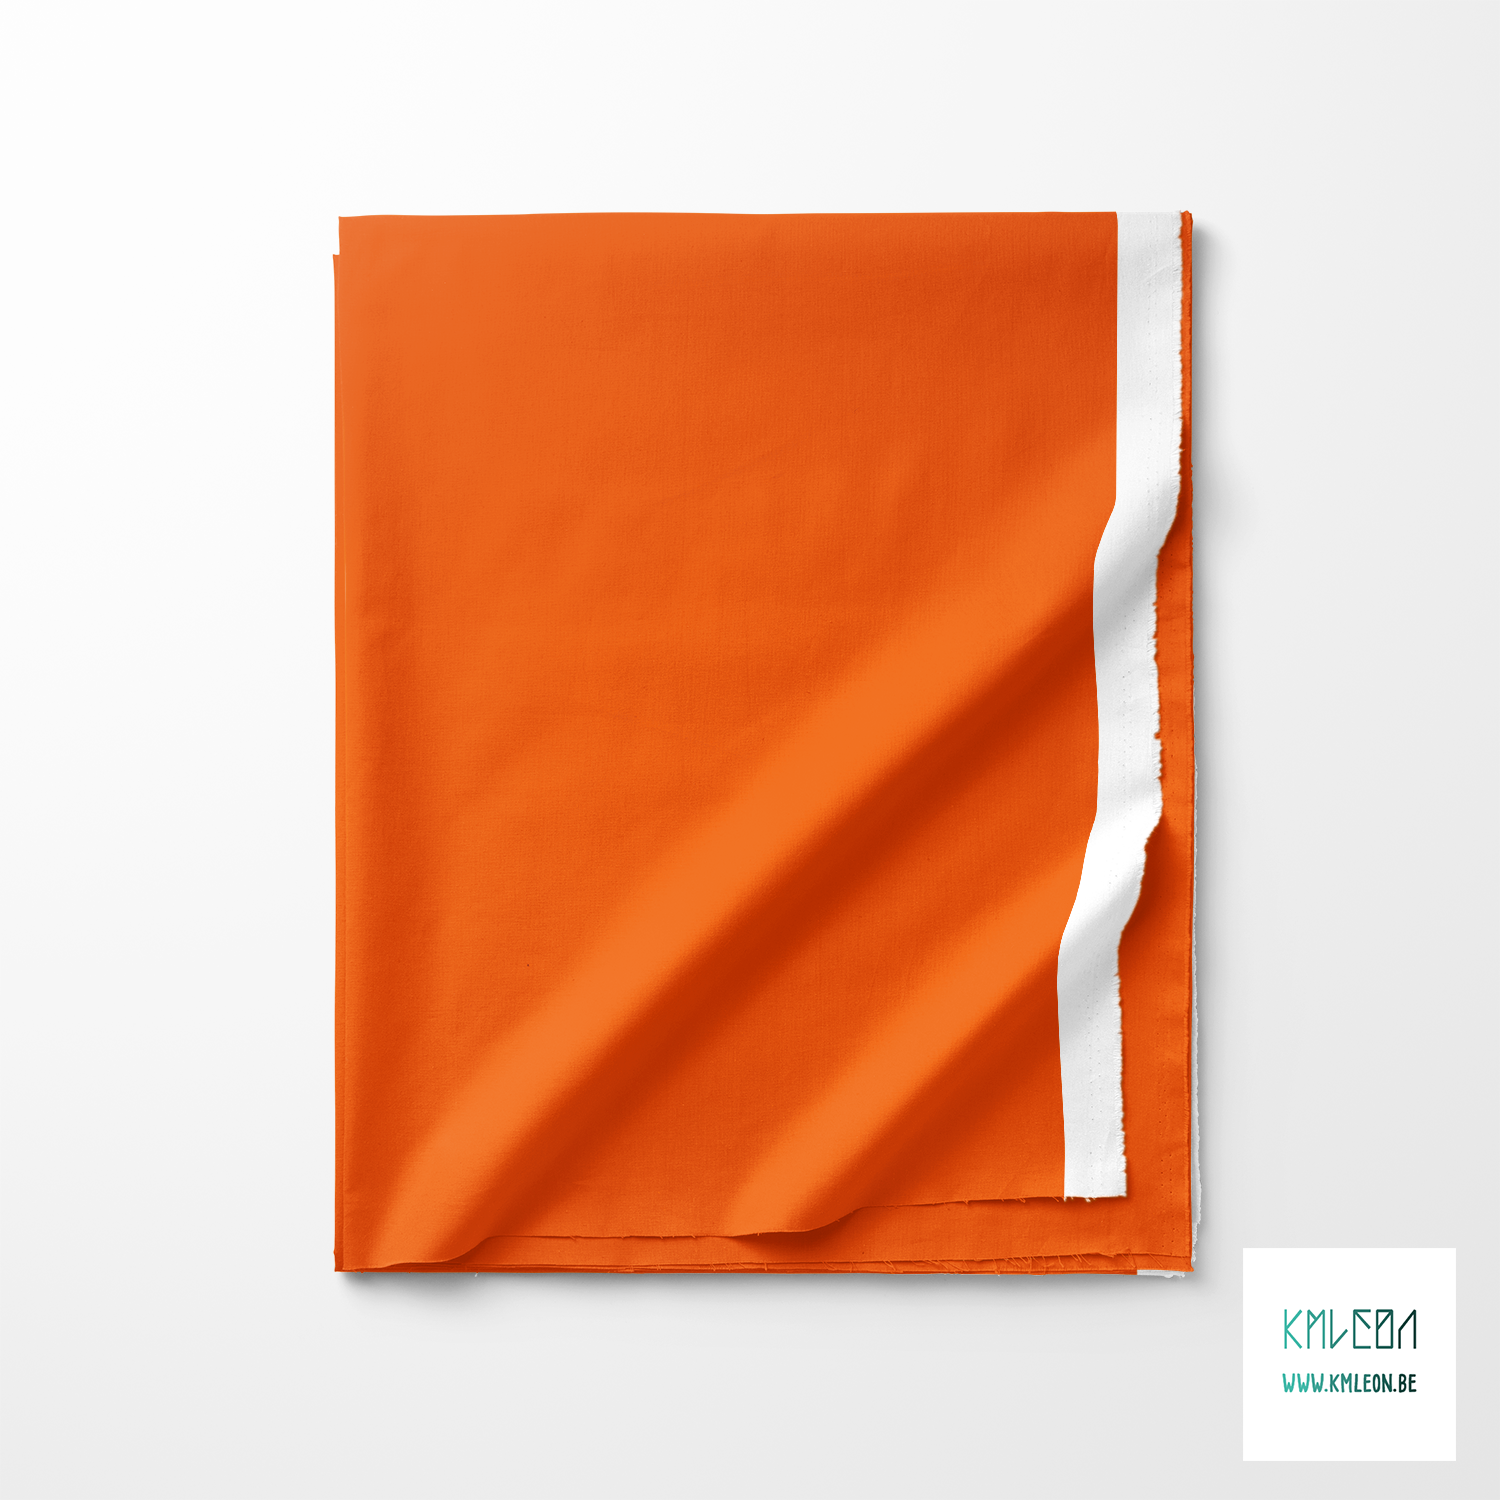 Solid vivid orange fabric